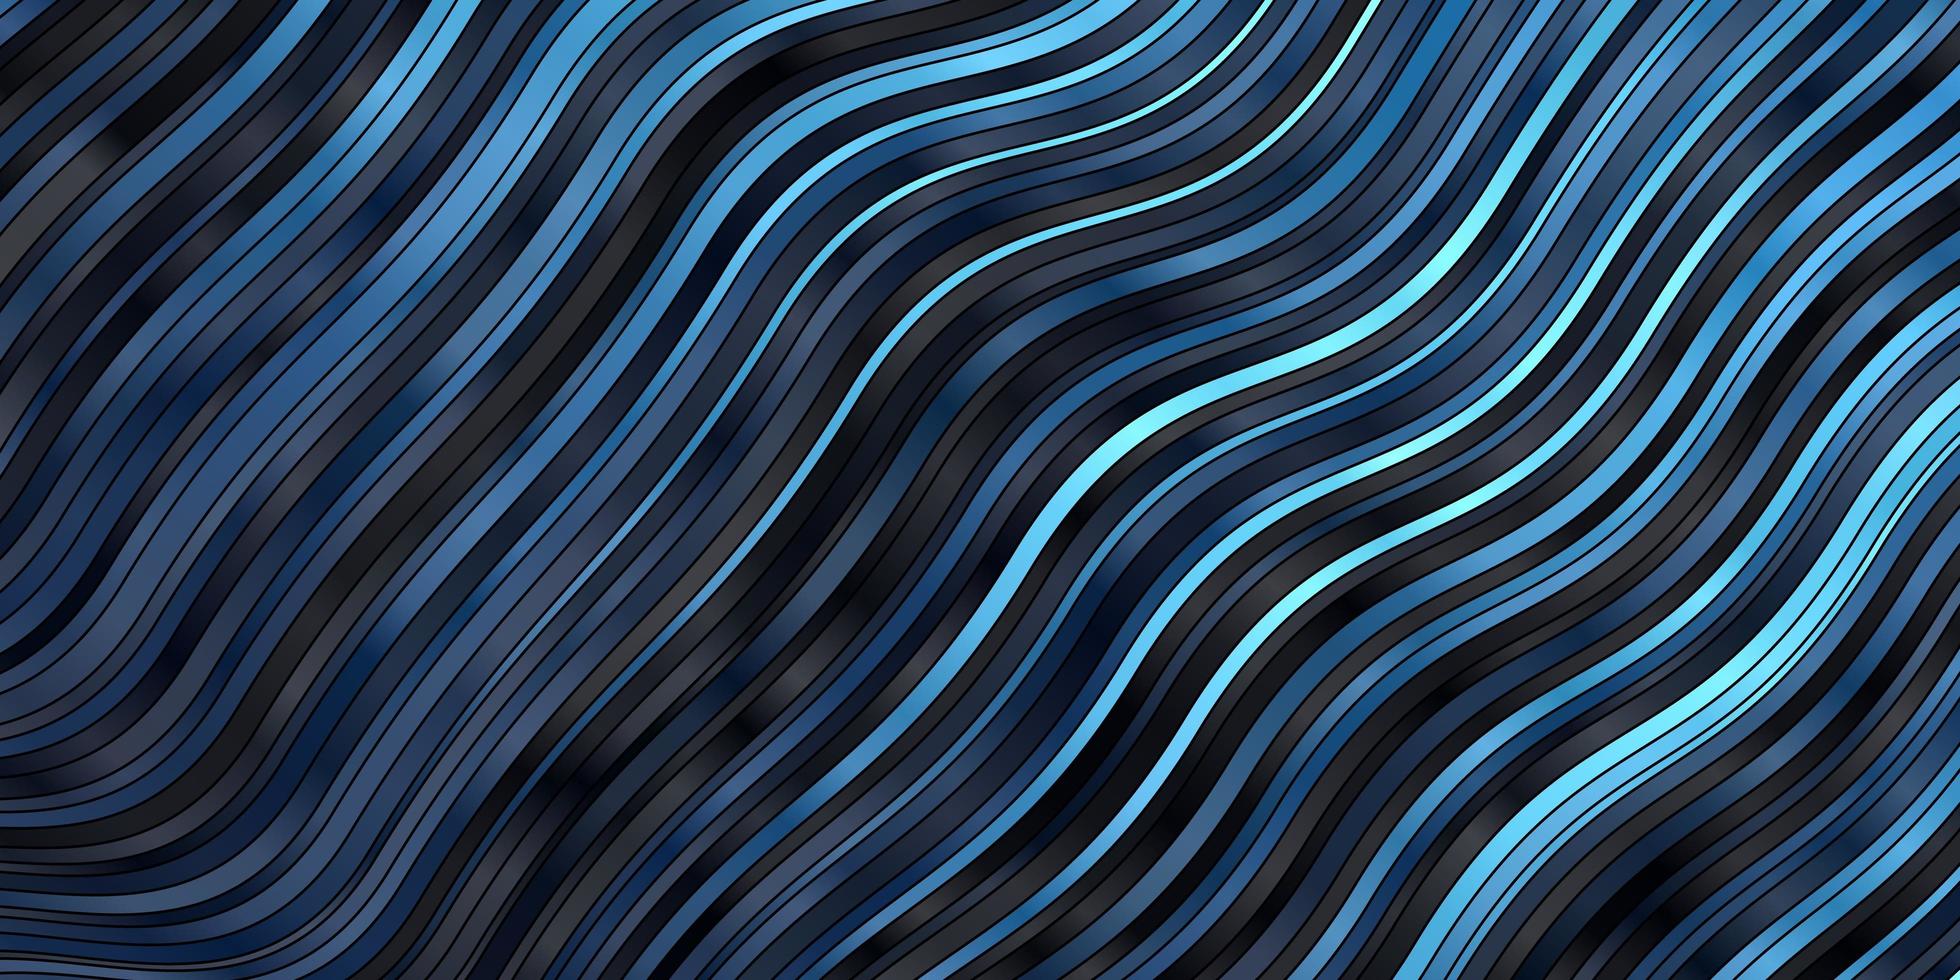 pano de fundo vector azul escuro com linhas dobradas.